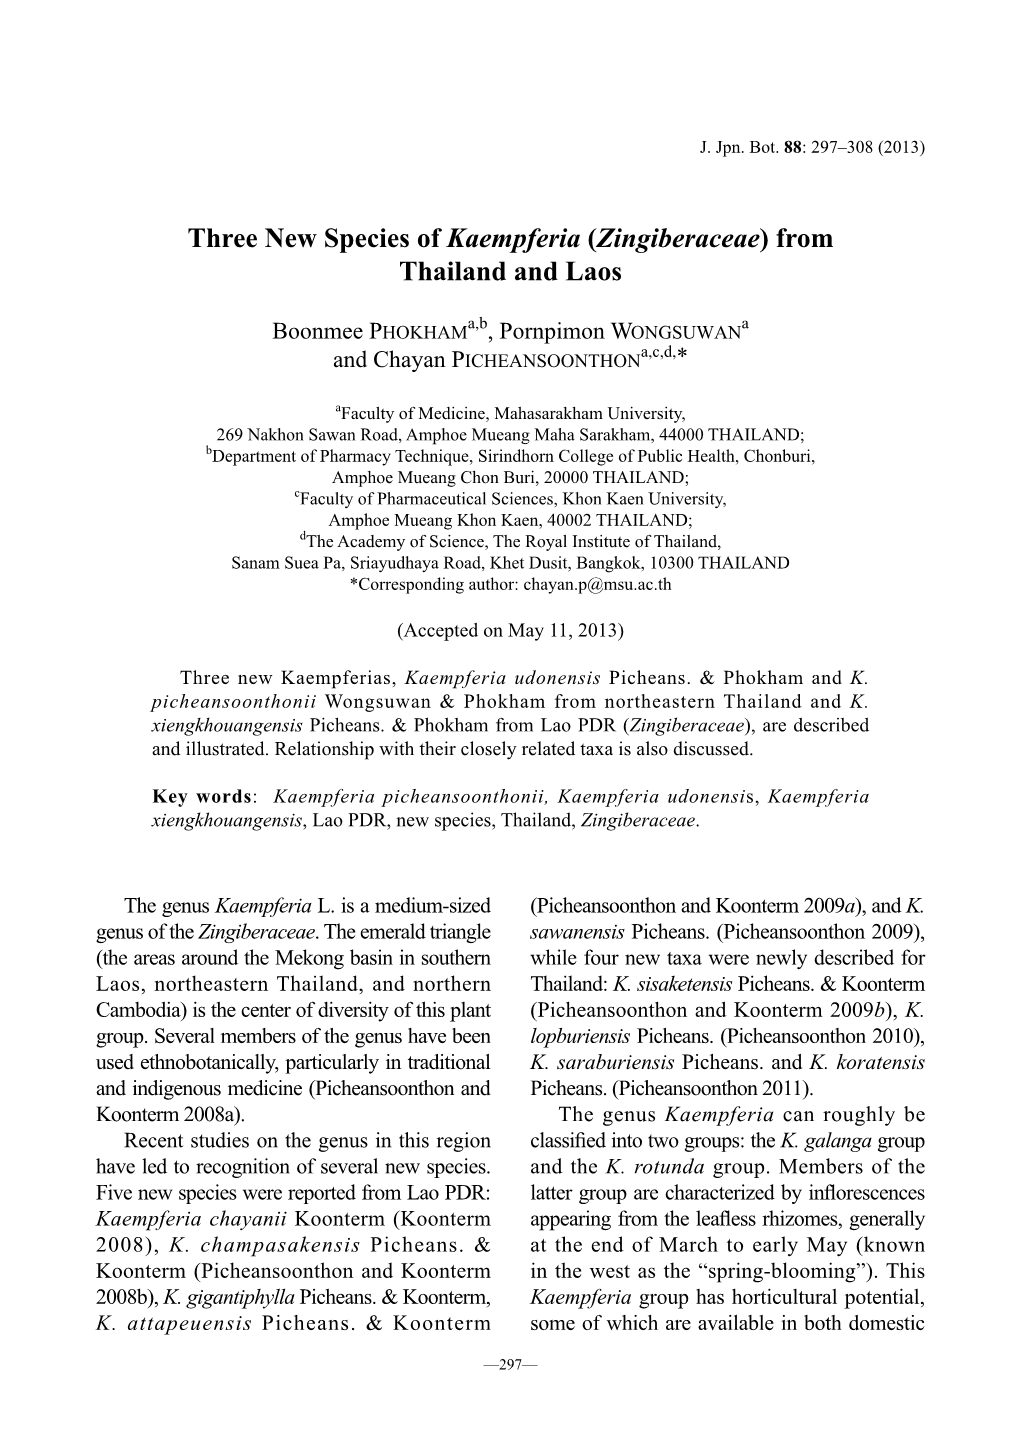 Three New Species of Kaempferia (Zingiberaceae) from Thailand and Laos